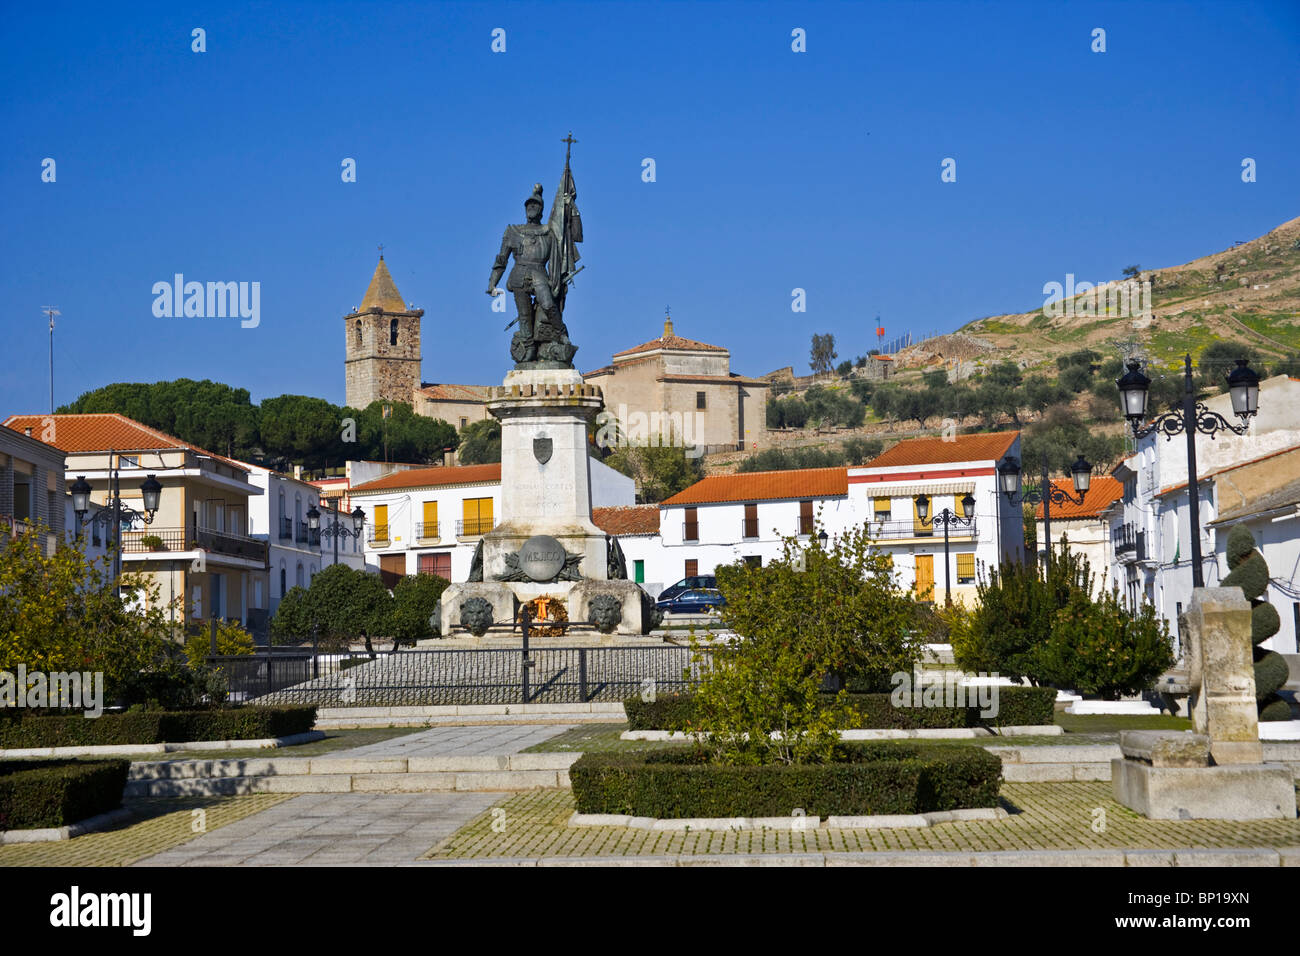 Statua di Hernan Cortes, conquistatore spagnolo del Messico, la piazza principale della città di Medellin, Estremadura, Spagna, Europa. Foto Stock